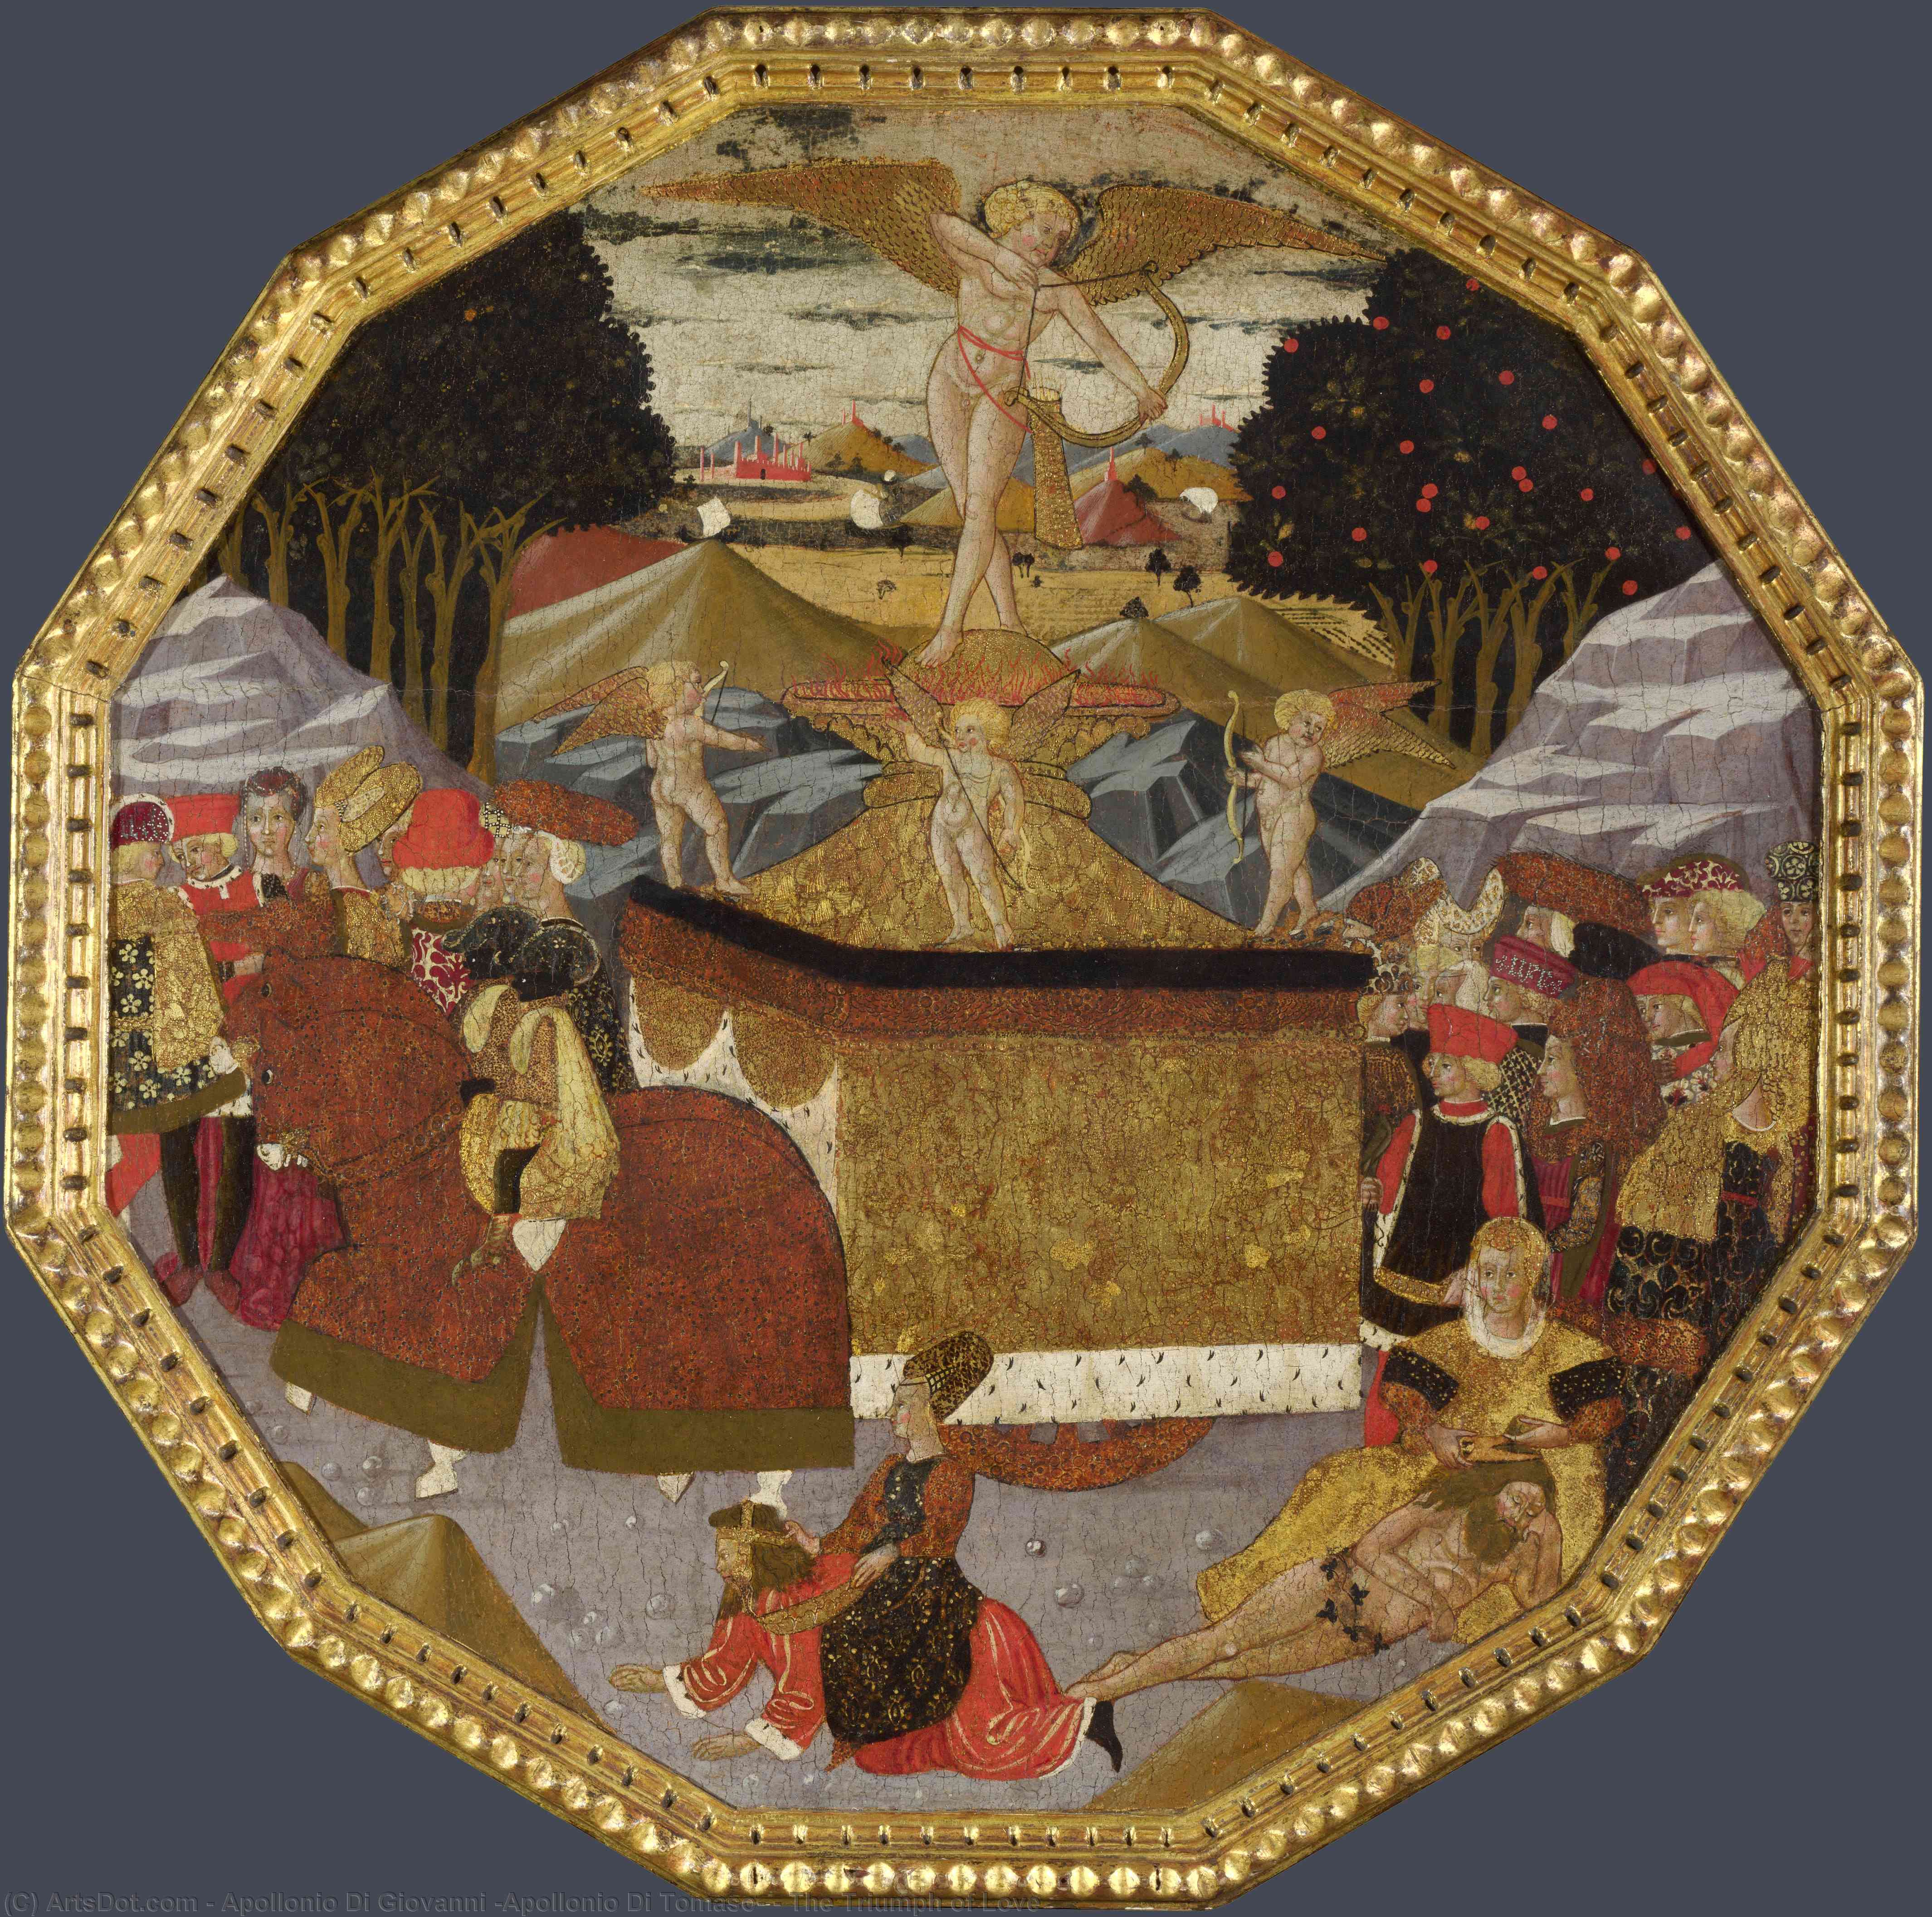 WikiOO.org - Encyclopedia of Fine Arts - Malba, Artwork Apollonio Di Giovanni (Apollonio Di Tomaso) - The Triumph of Love